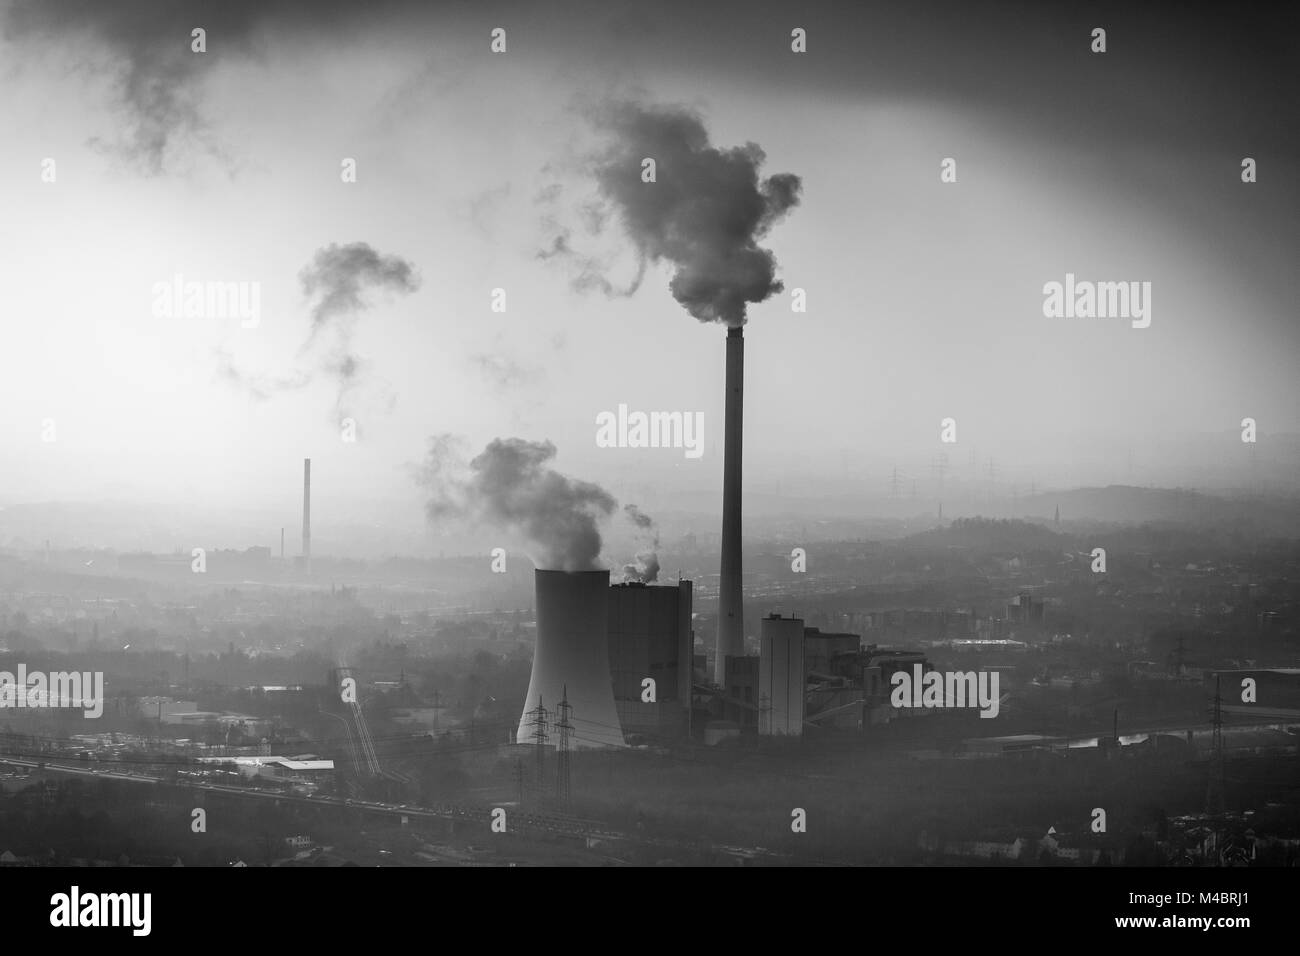 STEAG-Heizkraftwerk Herne, Kohlekraftwerk mit Rauch Wolke im Dunst vor industriekulisse, Herne Stockfoto